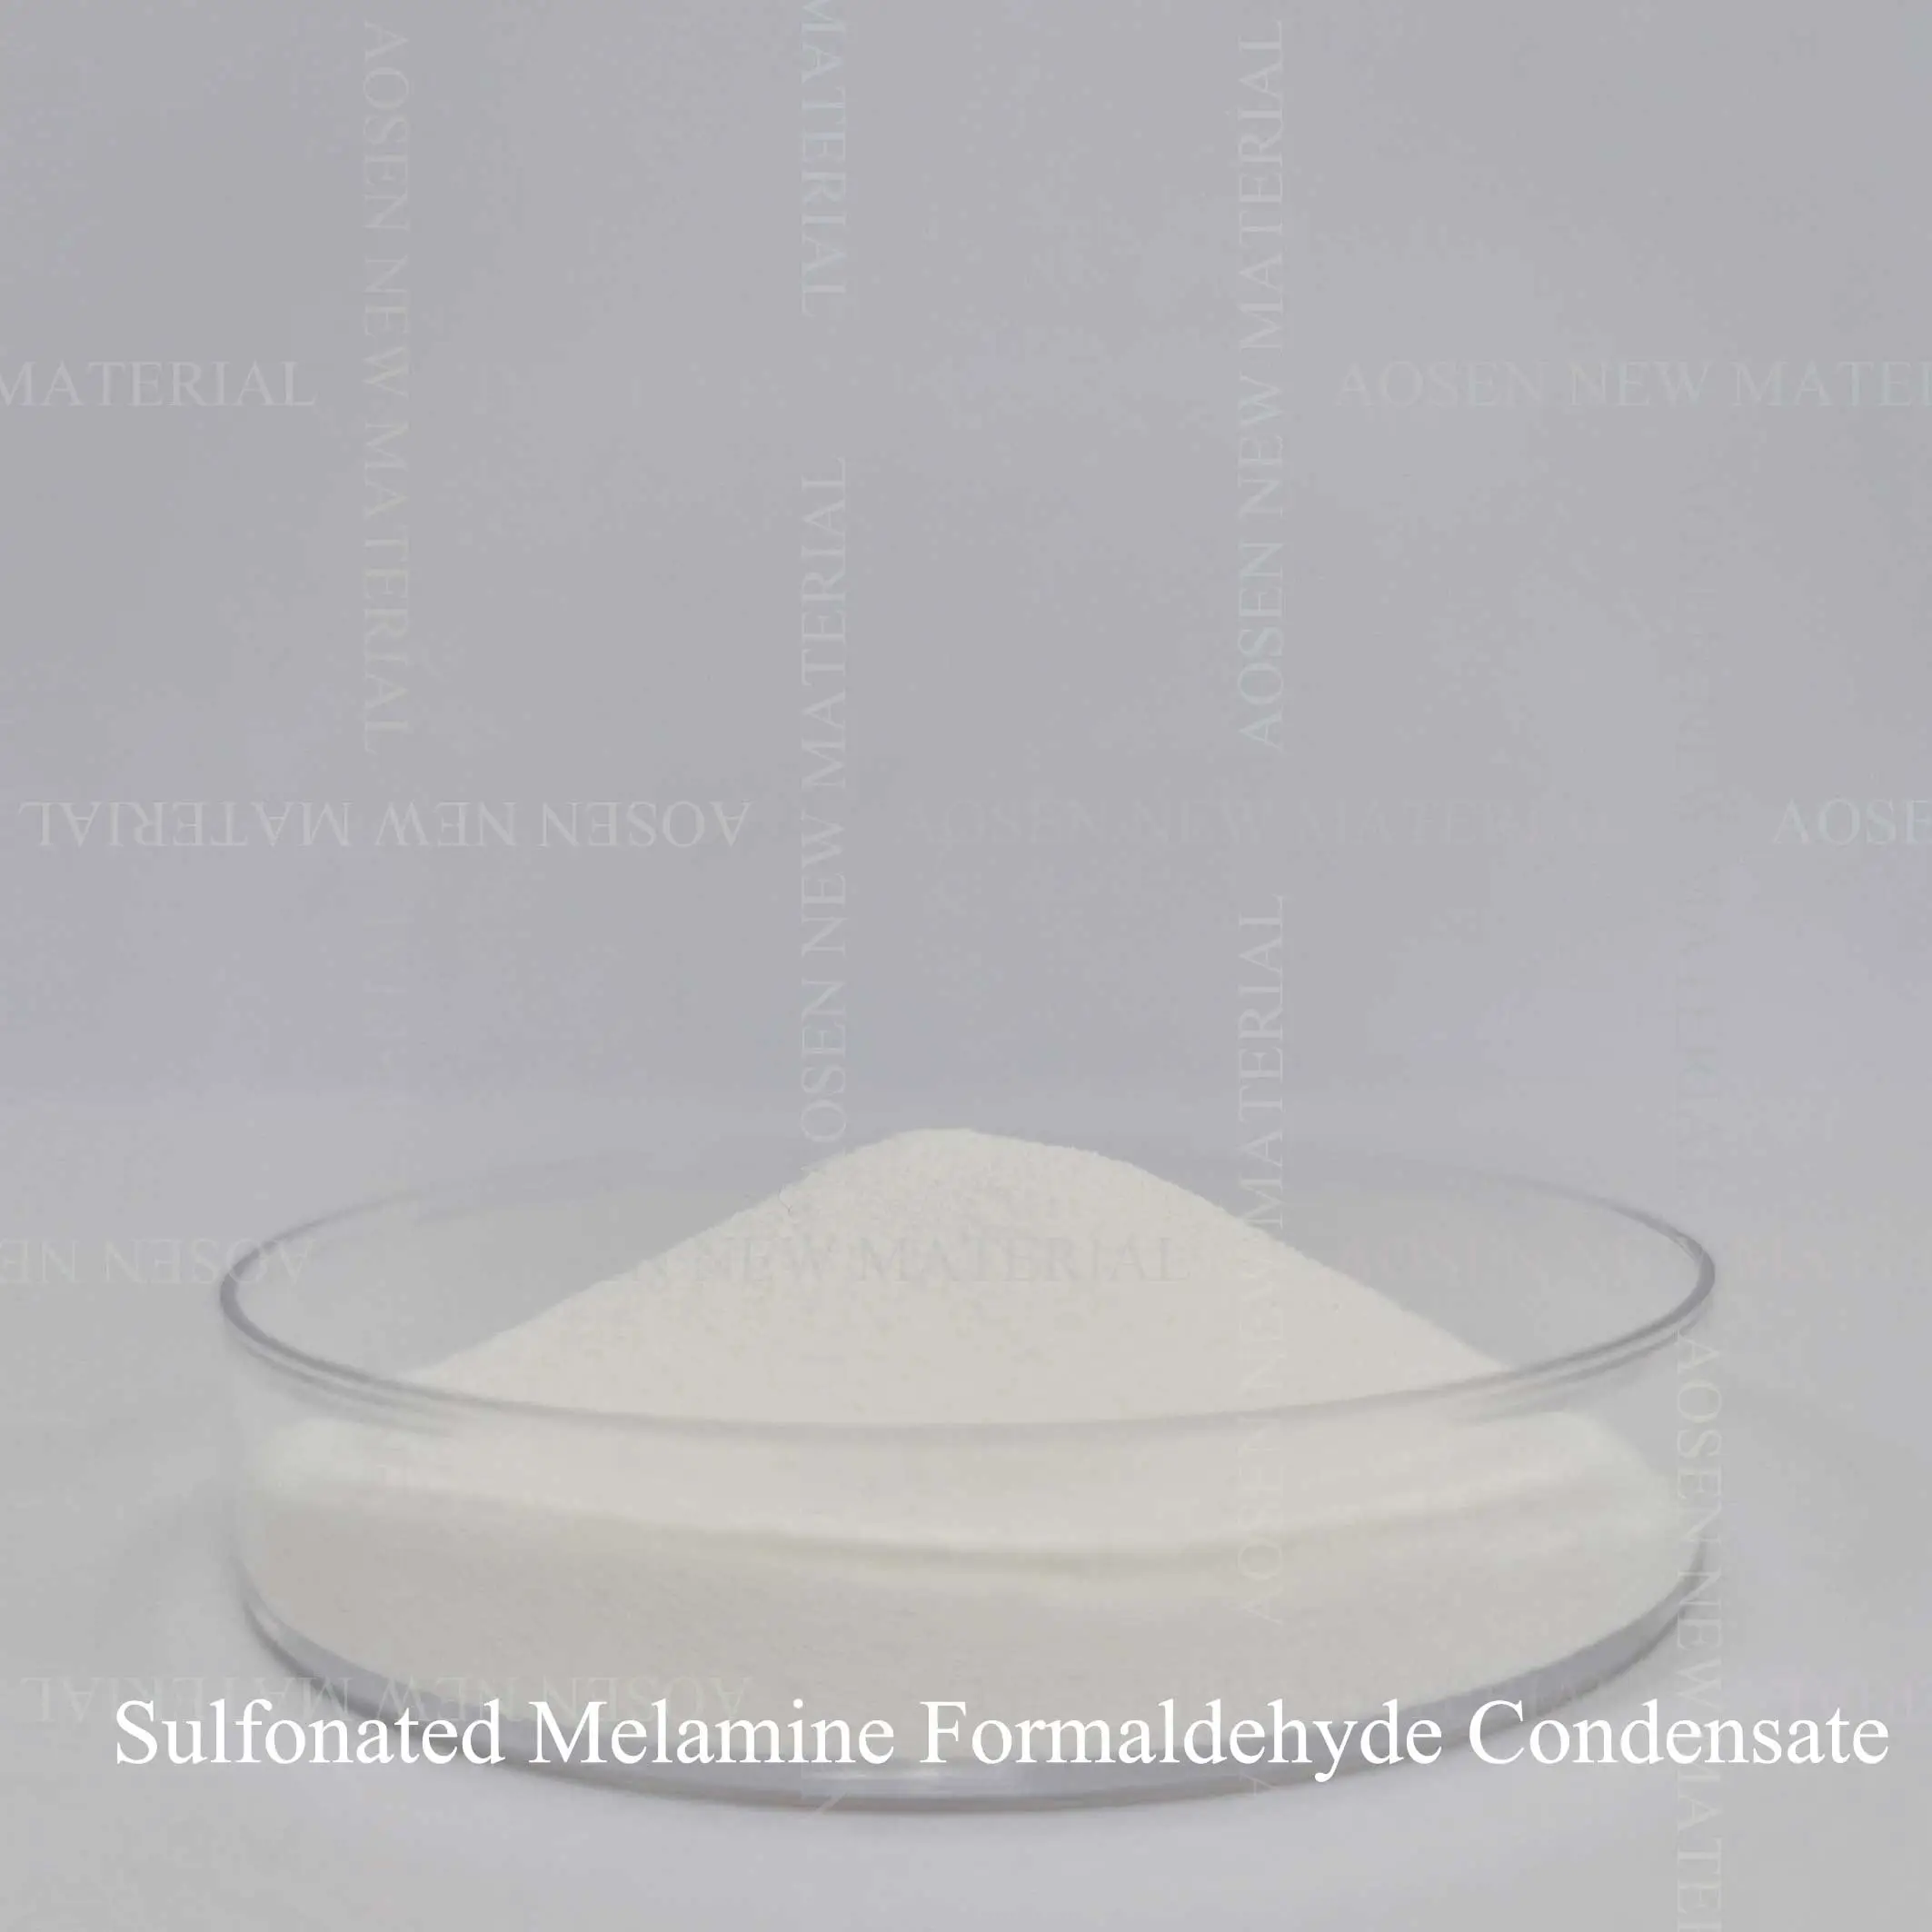 Gesulfoneerd melamine-formaldehyde-condensaat